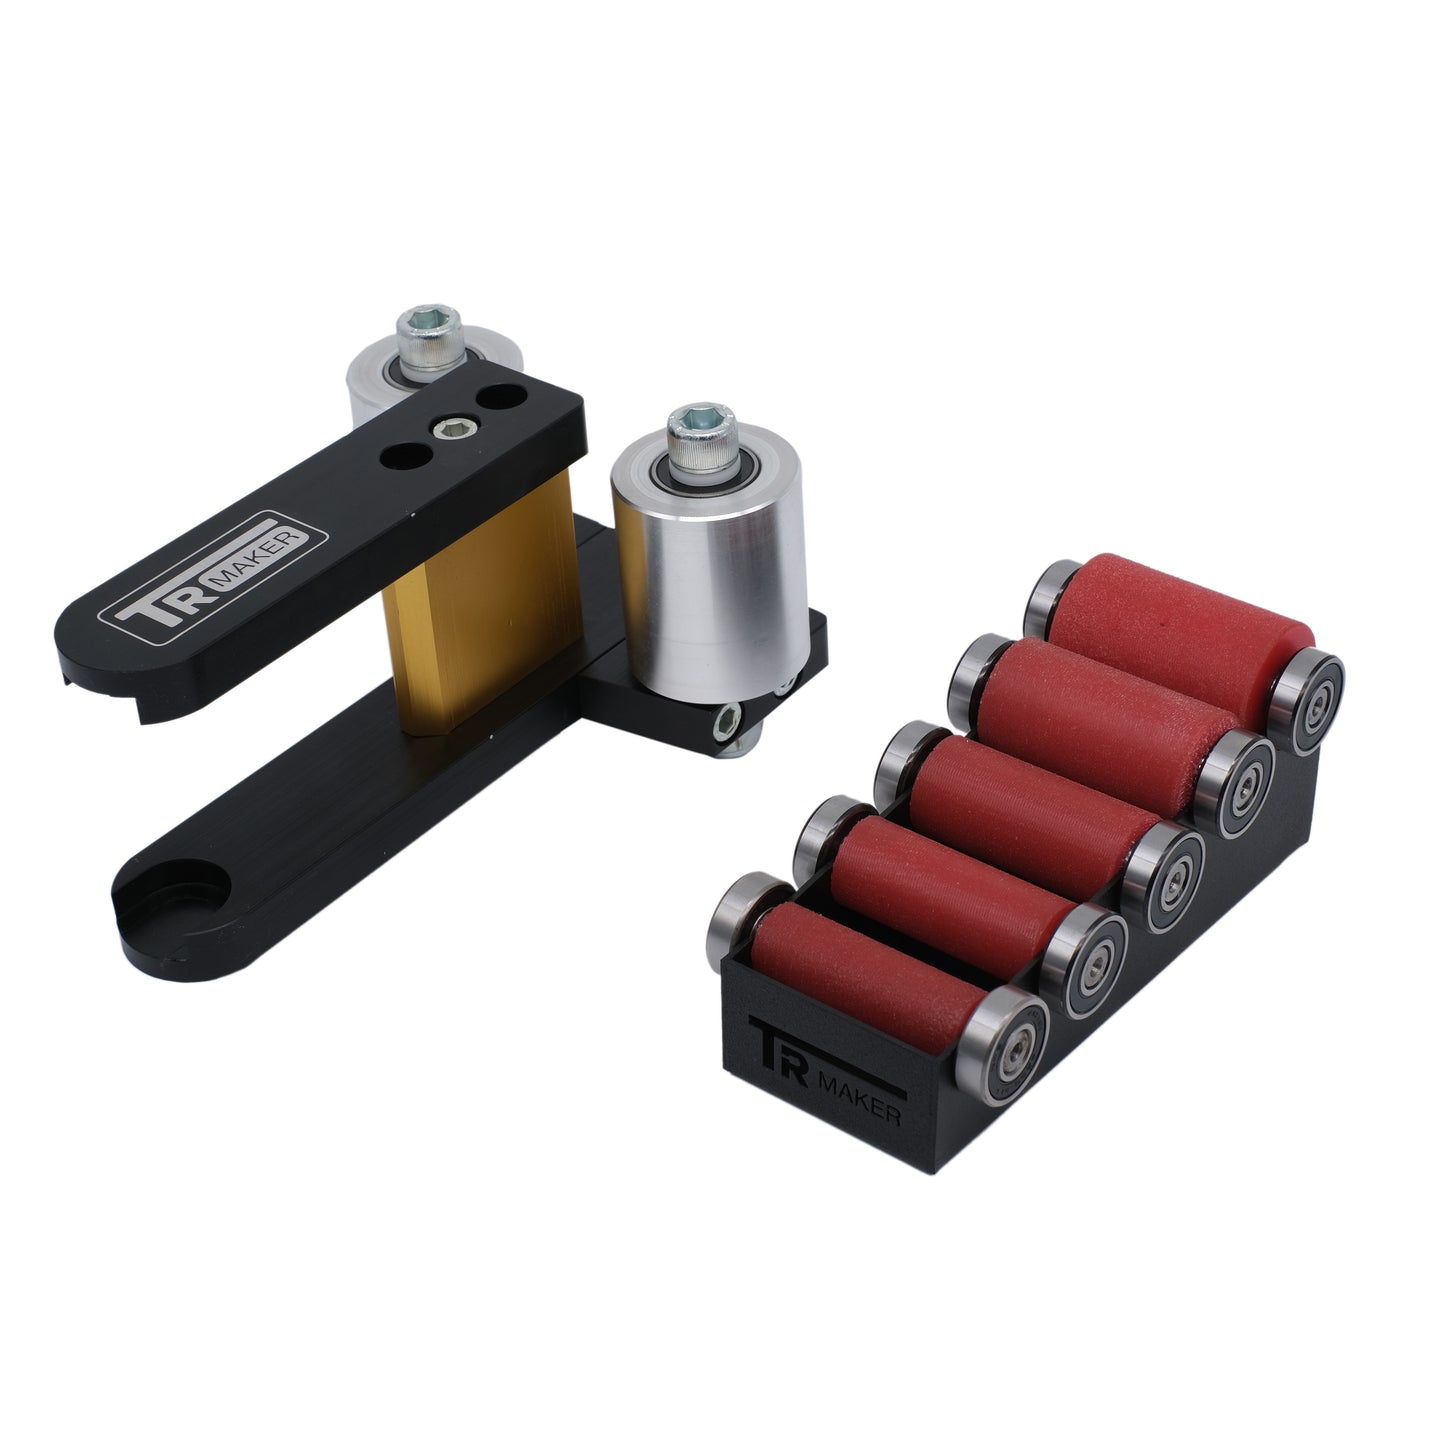 TR Maker Belt Grinder 2x72 small wheel set & holder for  grinders Black  color